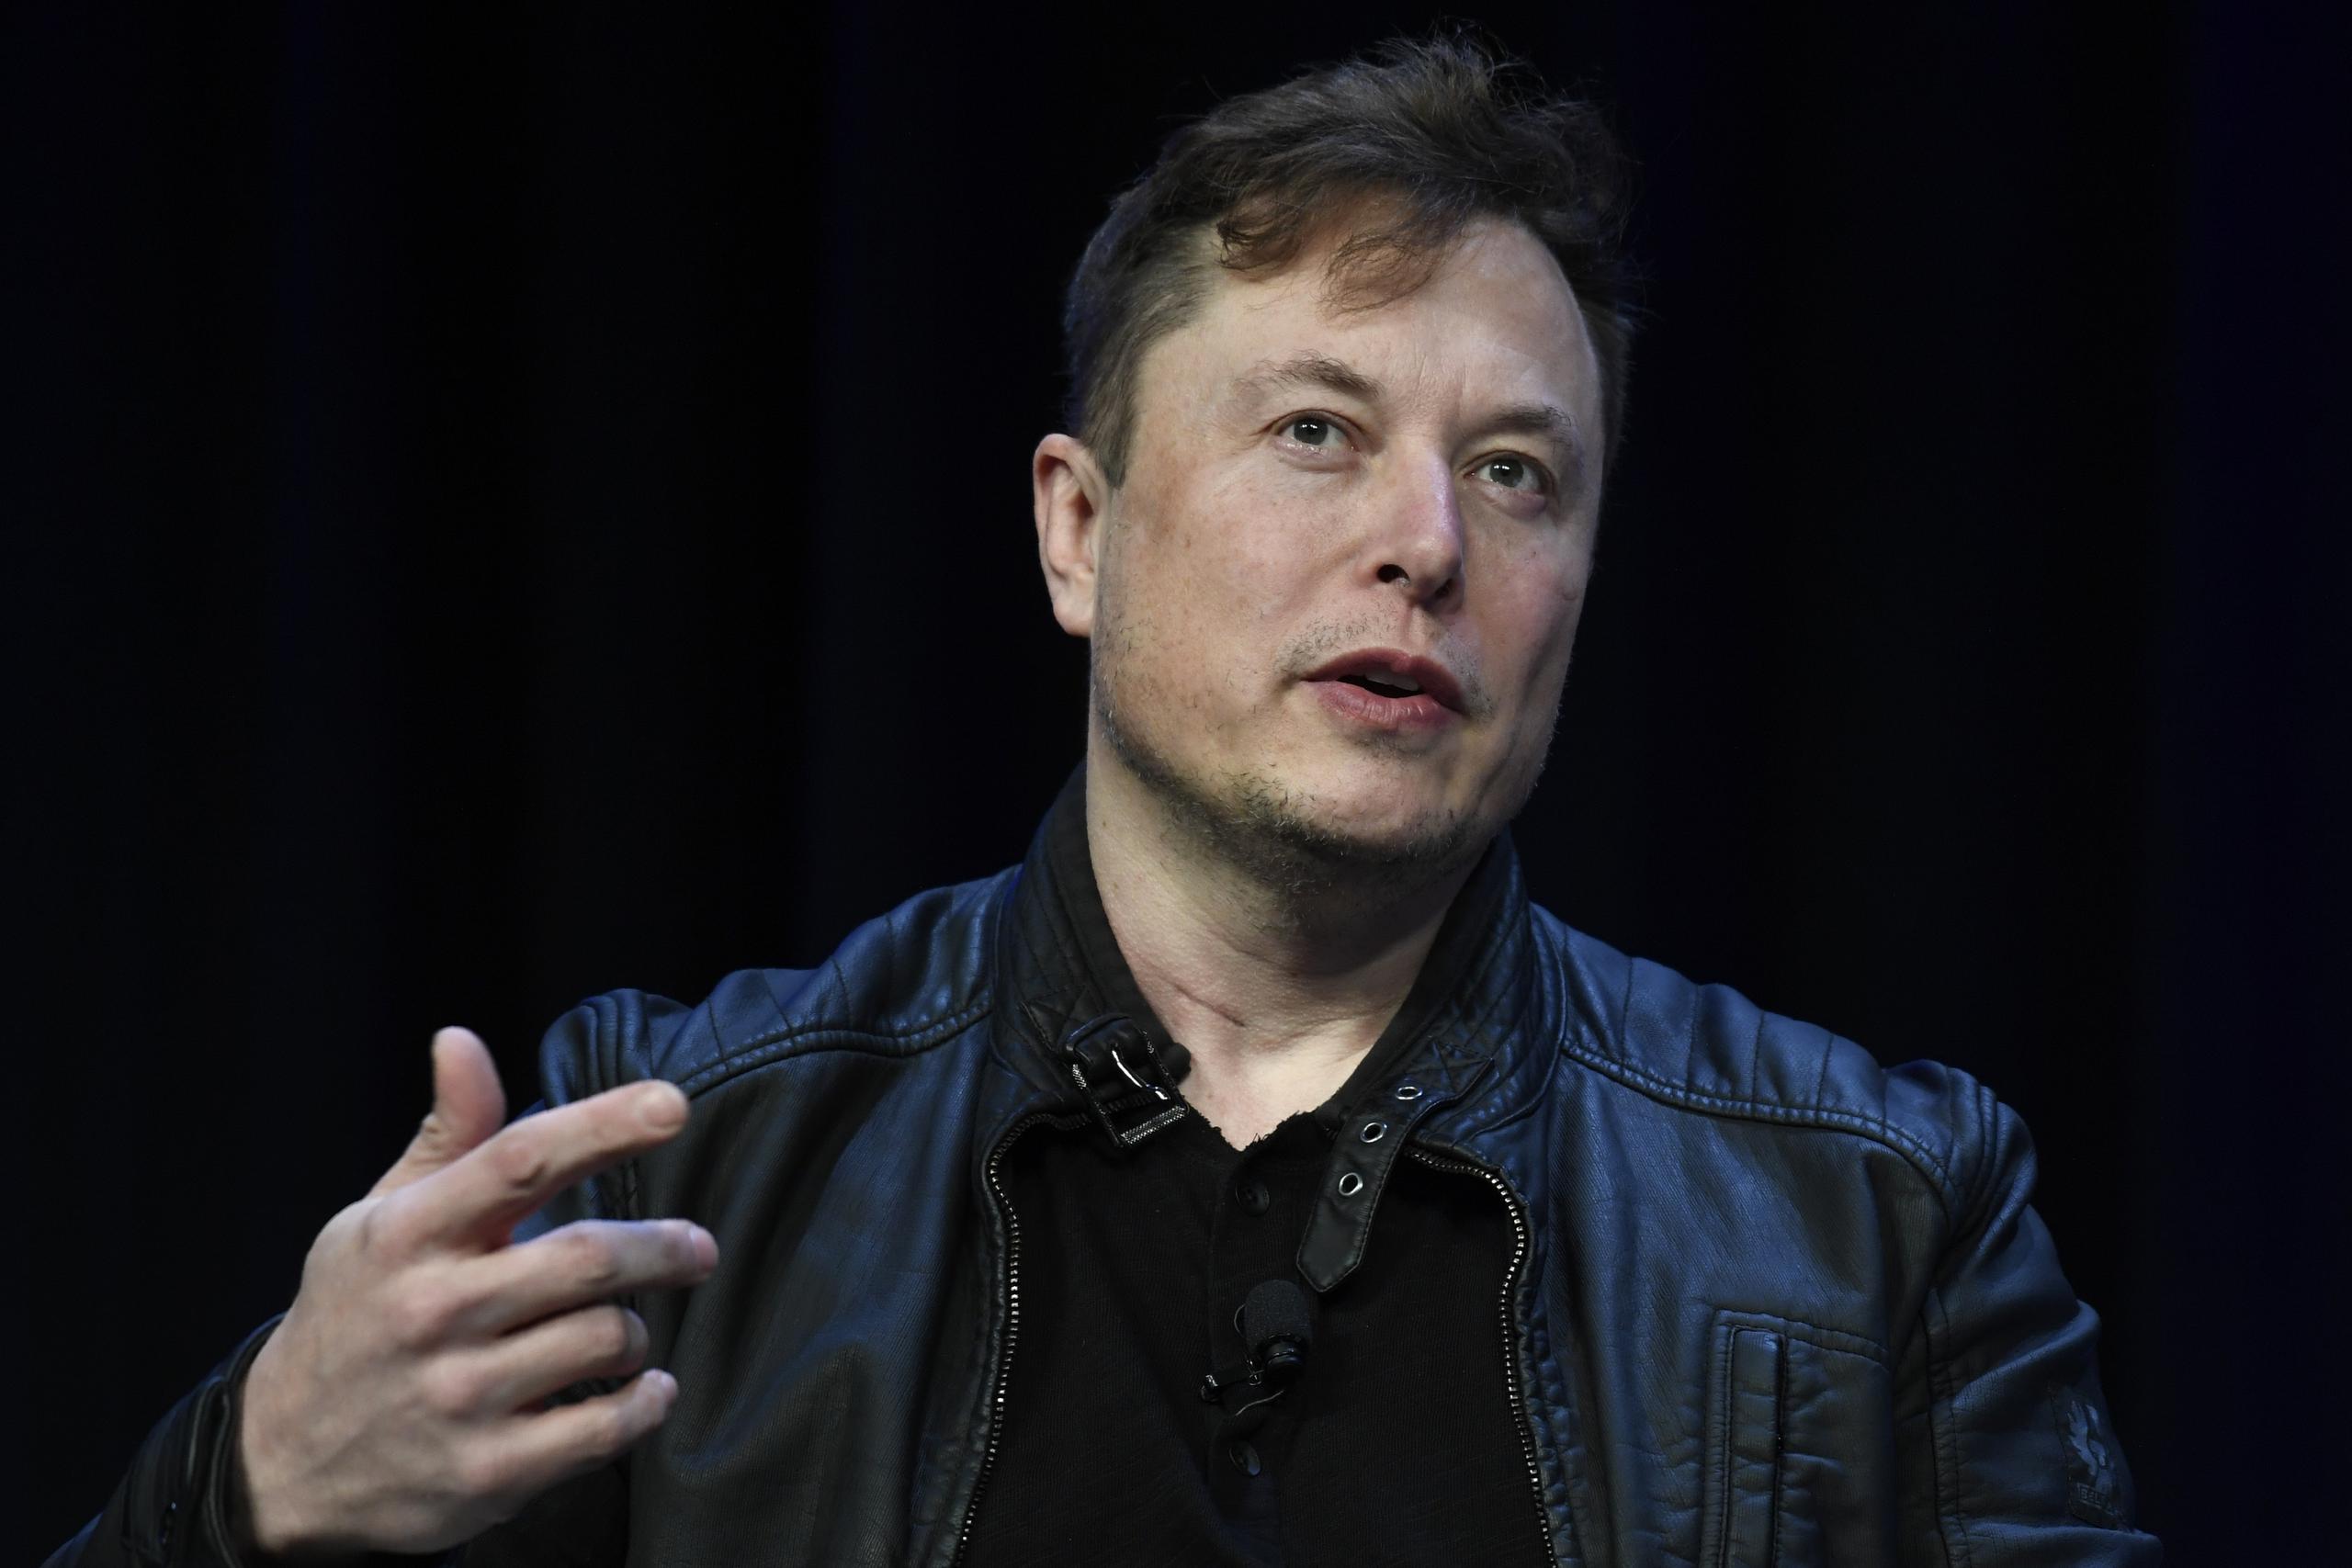 Musk dijo que el primer producto de Neuralink se llama “Telepathy” y que permitirá al usuario controlar sus teléfonos o computadoras “con el solo pensamiento”.